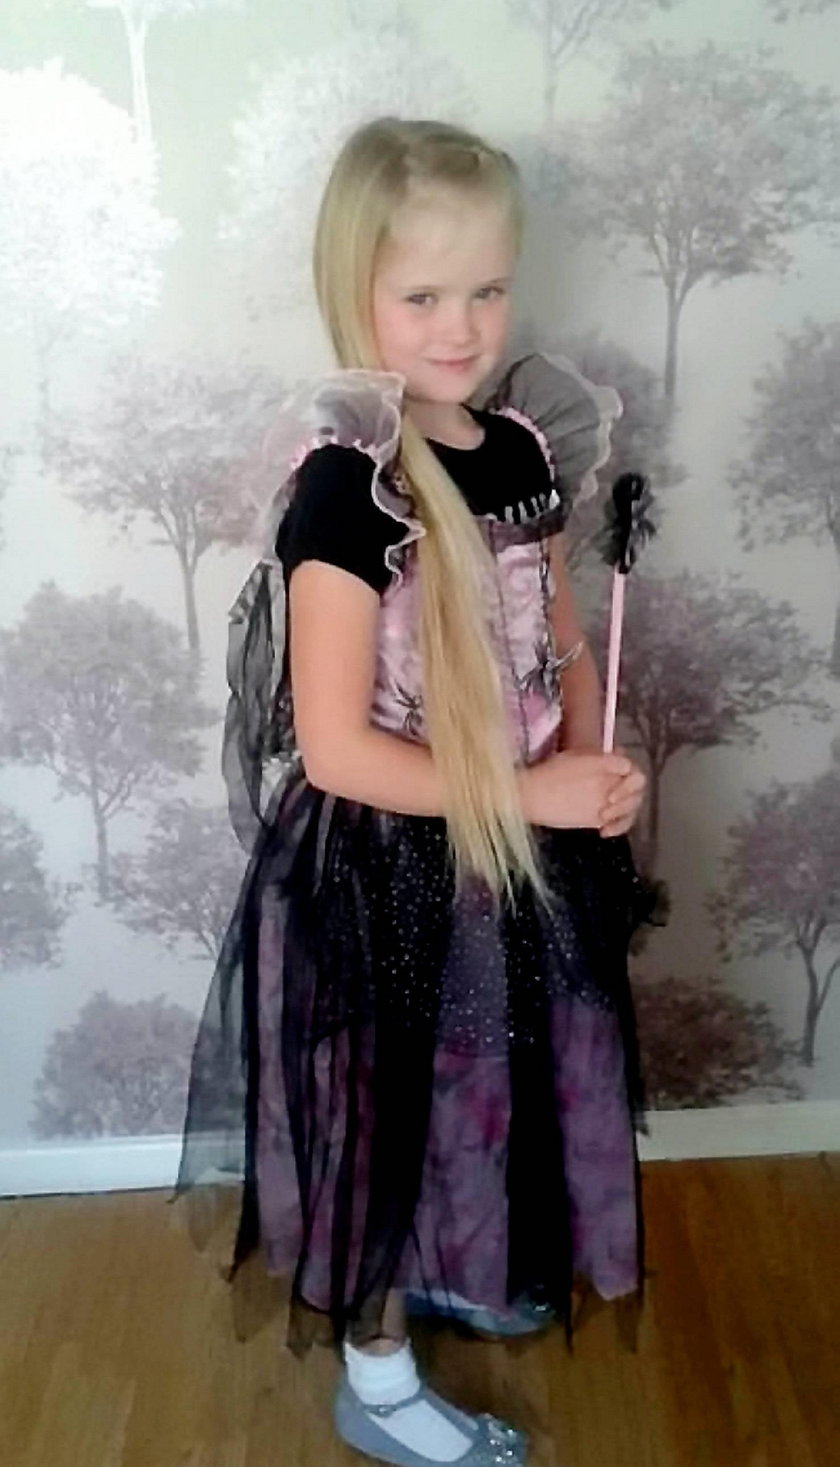 Wielka Brytania: Zabił 8-letnią córkę. William Billingham usłyszał wyrok